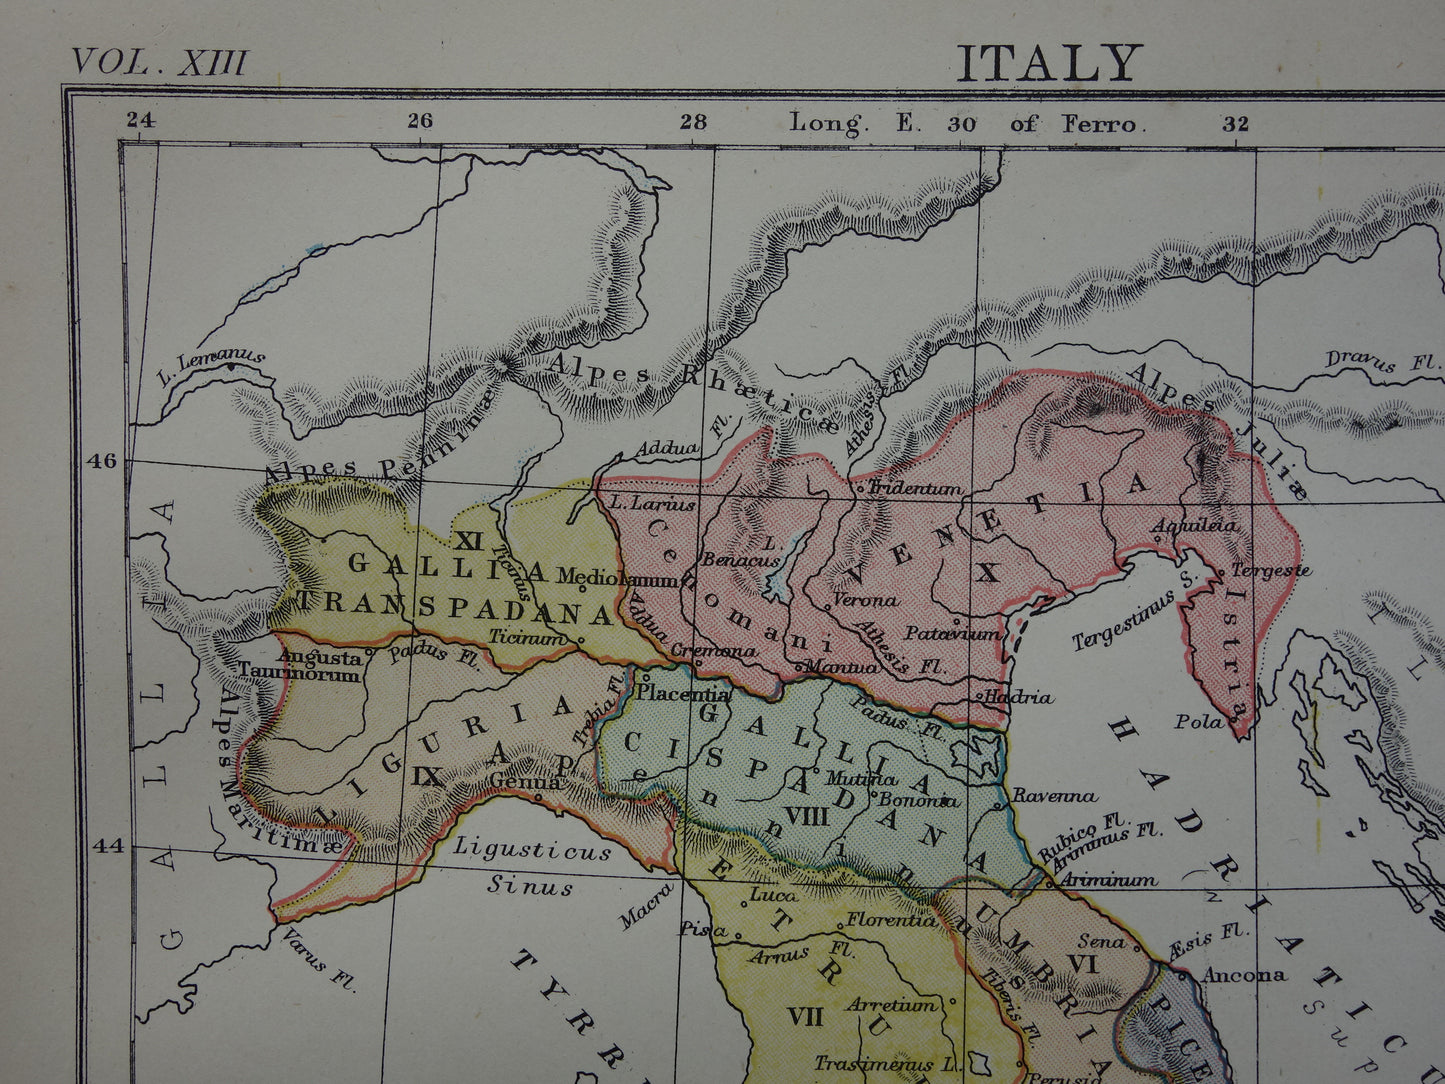 Italië set van 2 antieke kaarten geschiedenis Italië - Romeinse Rijk Augustus tot Constantijn & Italië voor 1797 - oude kaart